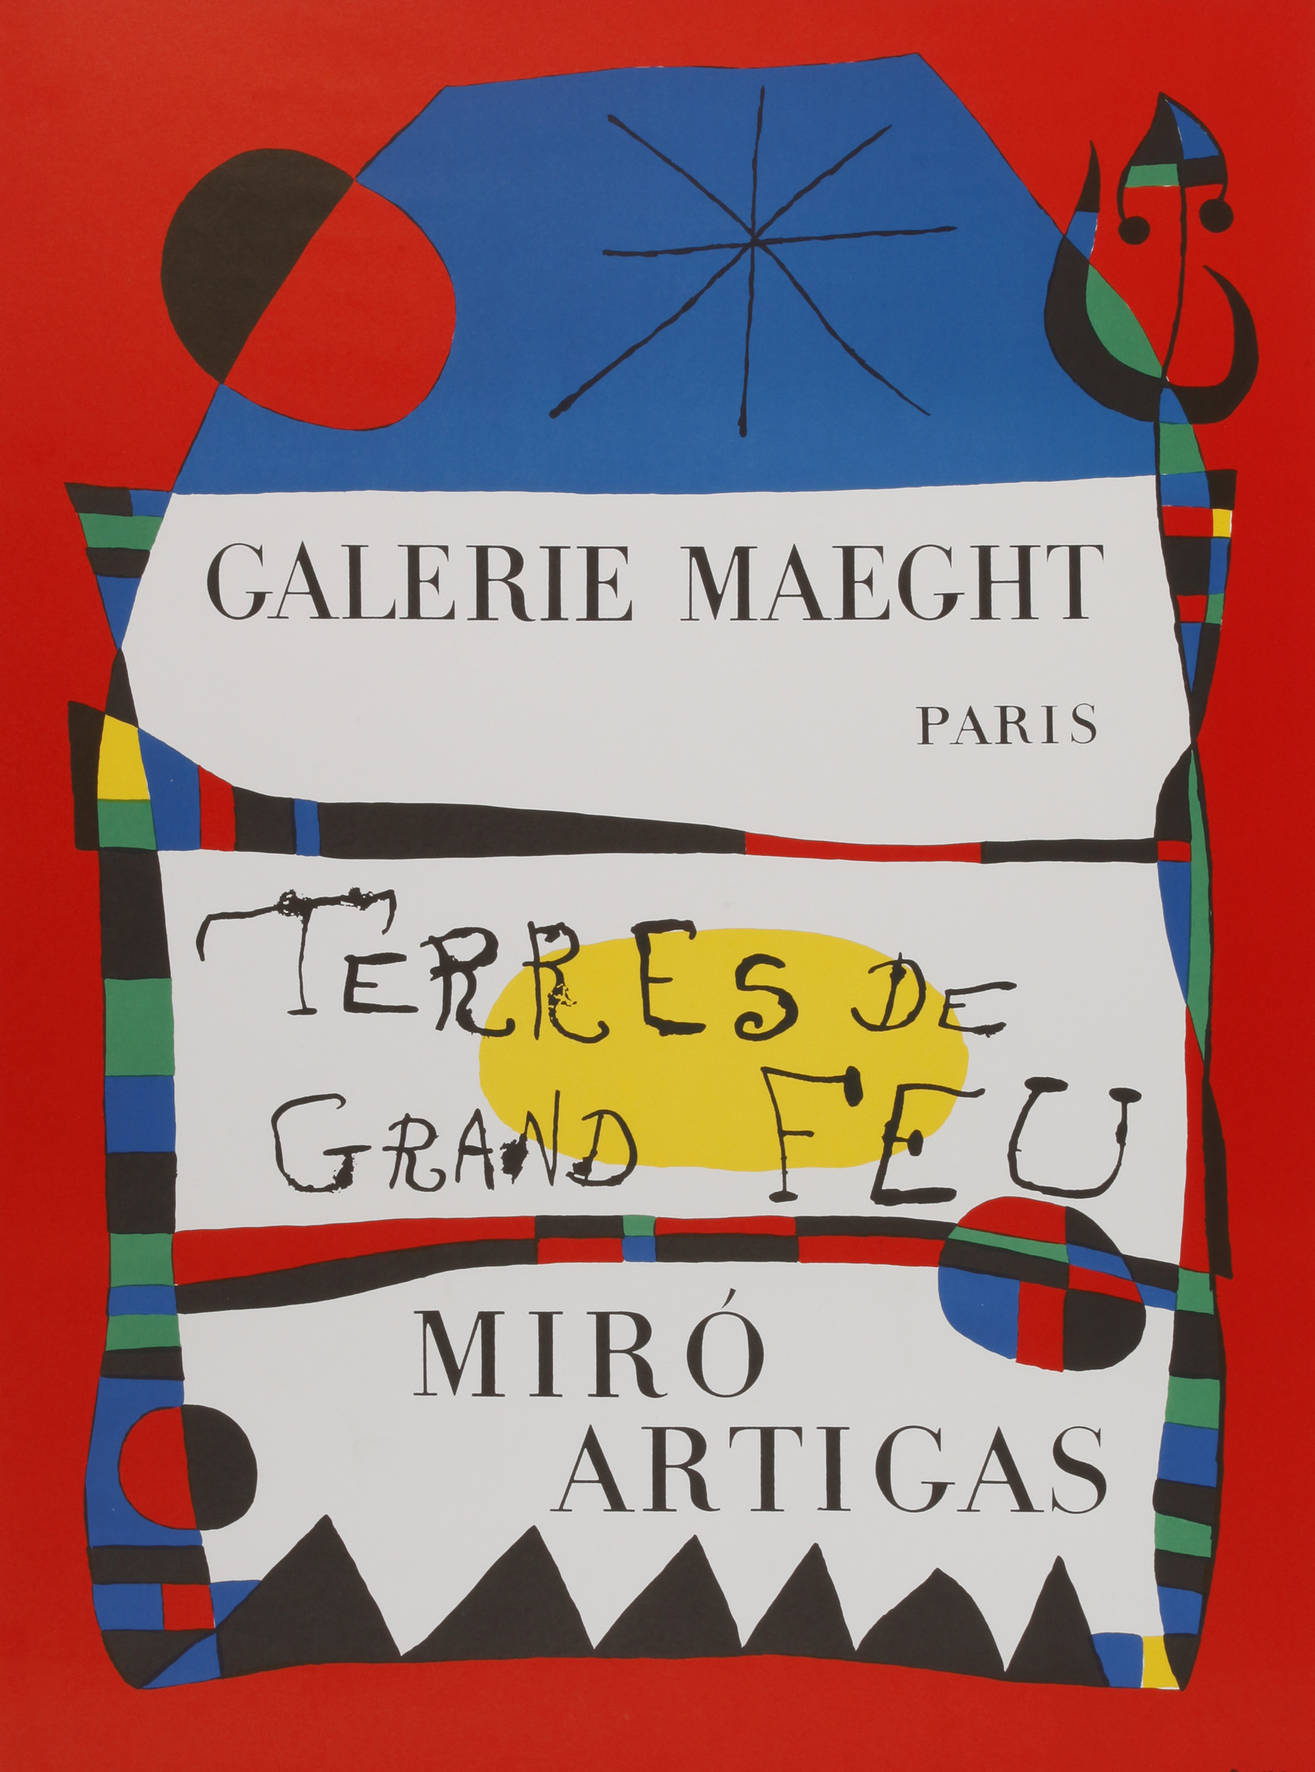 Joan Miró, ”Terres de grand feu”